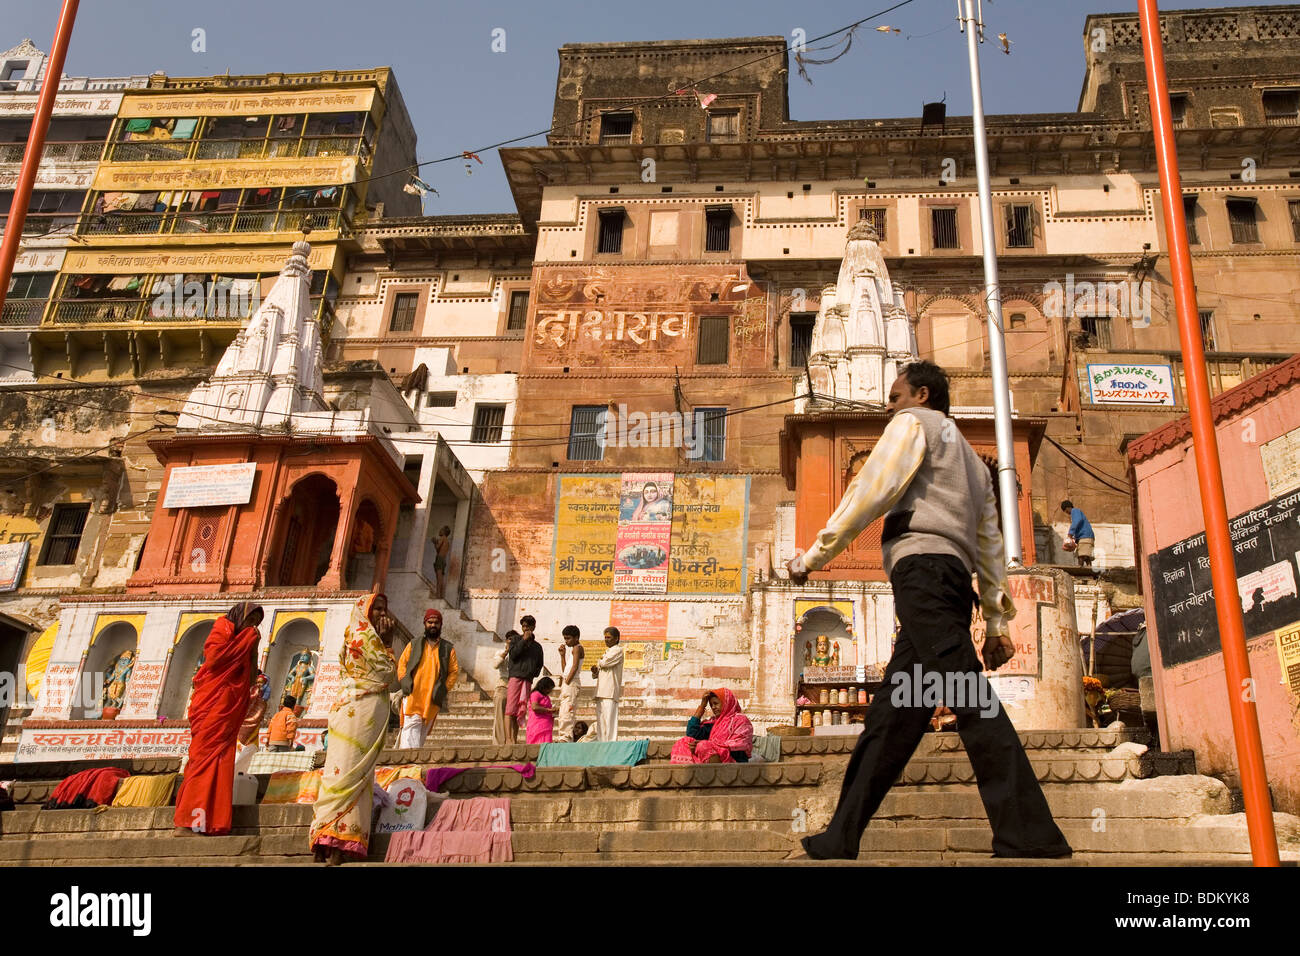 Un homme géant le long des ghats de Varanasi, en Inde. Les hommes et les femmes se lever et regarder l'homme à pied. Banque D'Images